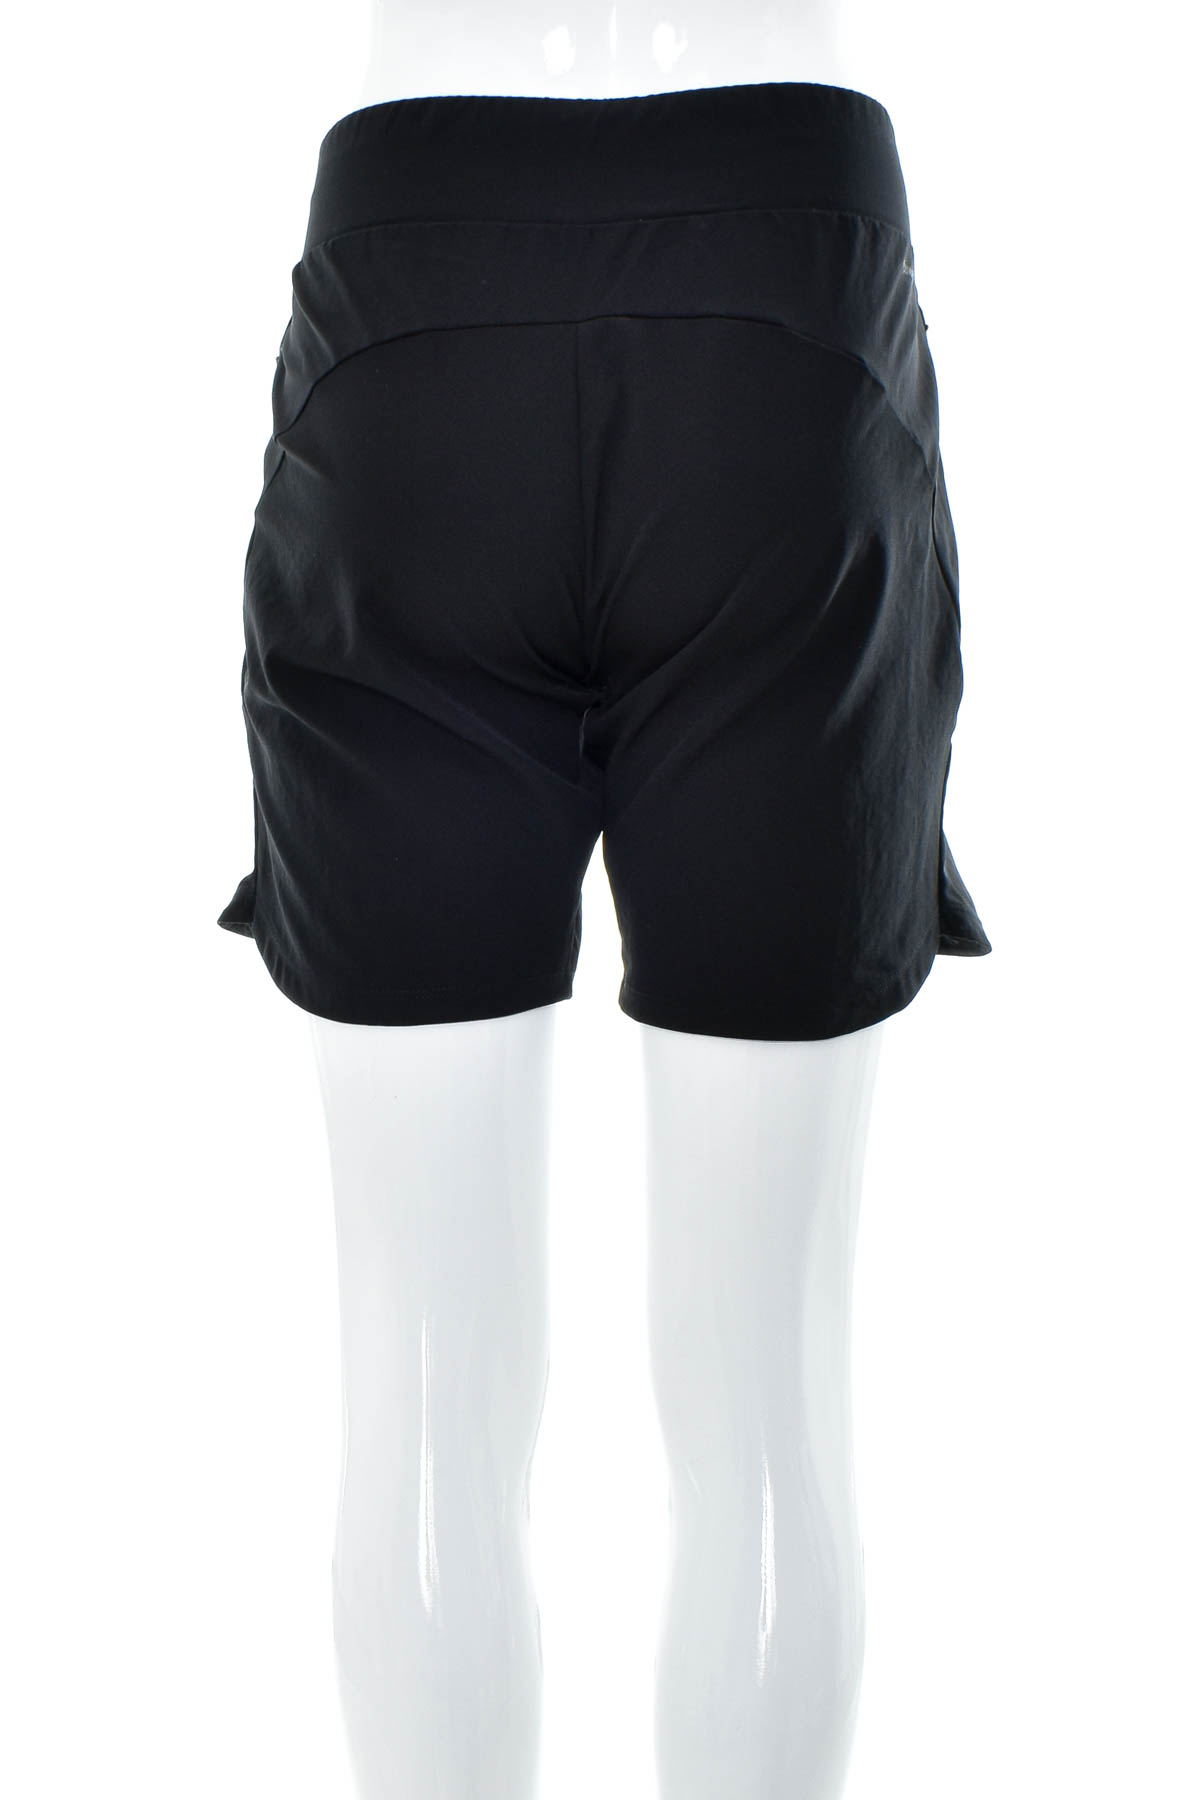 Female shorts - Adidas - 1